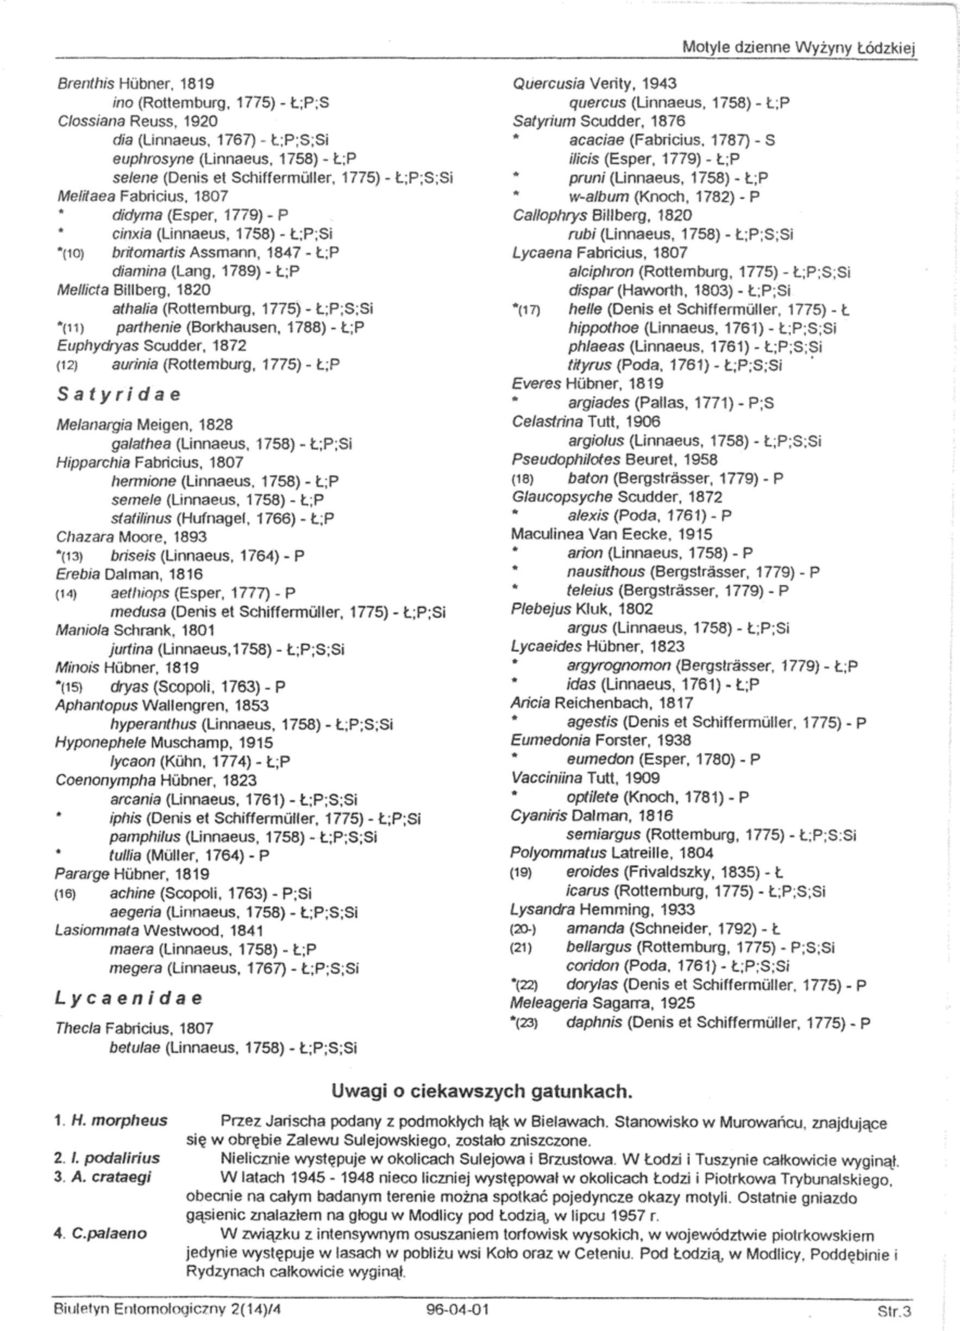 1820 athalia (Rottemburg, 1775) - Ł;P;S;Si *(11) parthenie (Borkhausen, 1788) - Ł;P Euphydryas Scudder, 1872 (12) aurinia (Rottemburg, 1775) - Ł;P Satyridae Meianargia Meigen, 1828 galathea